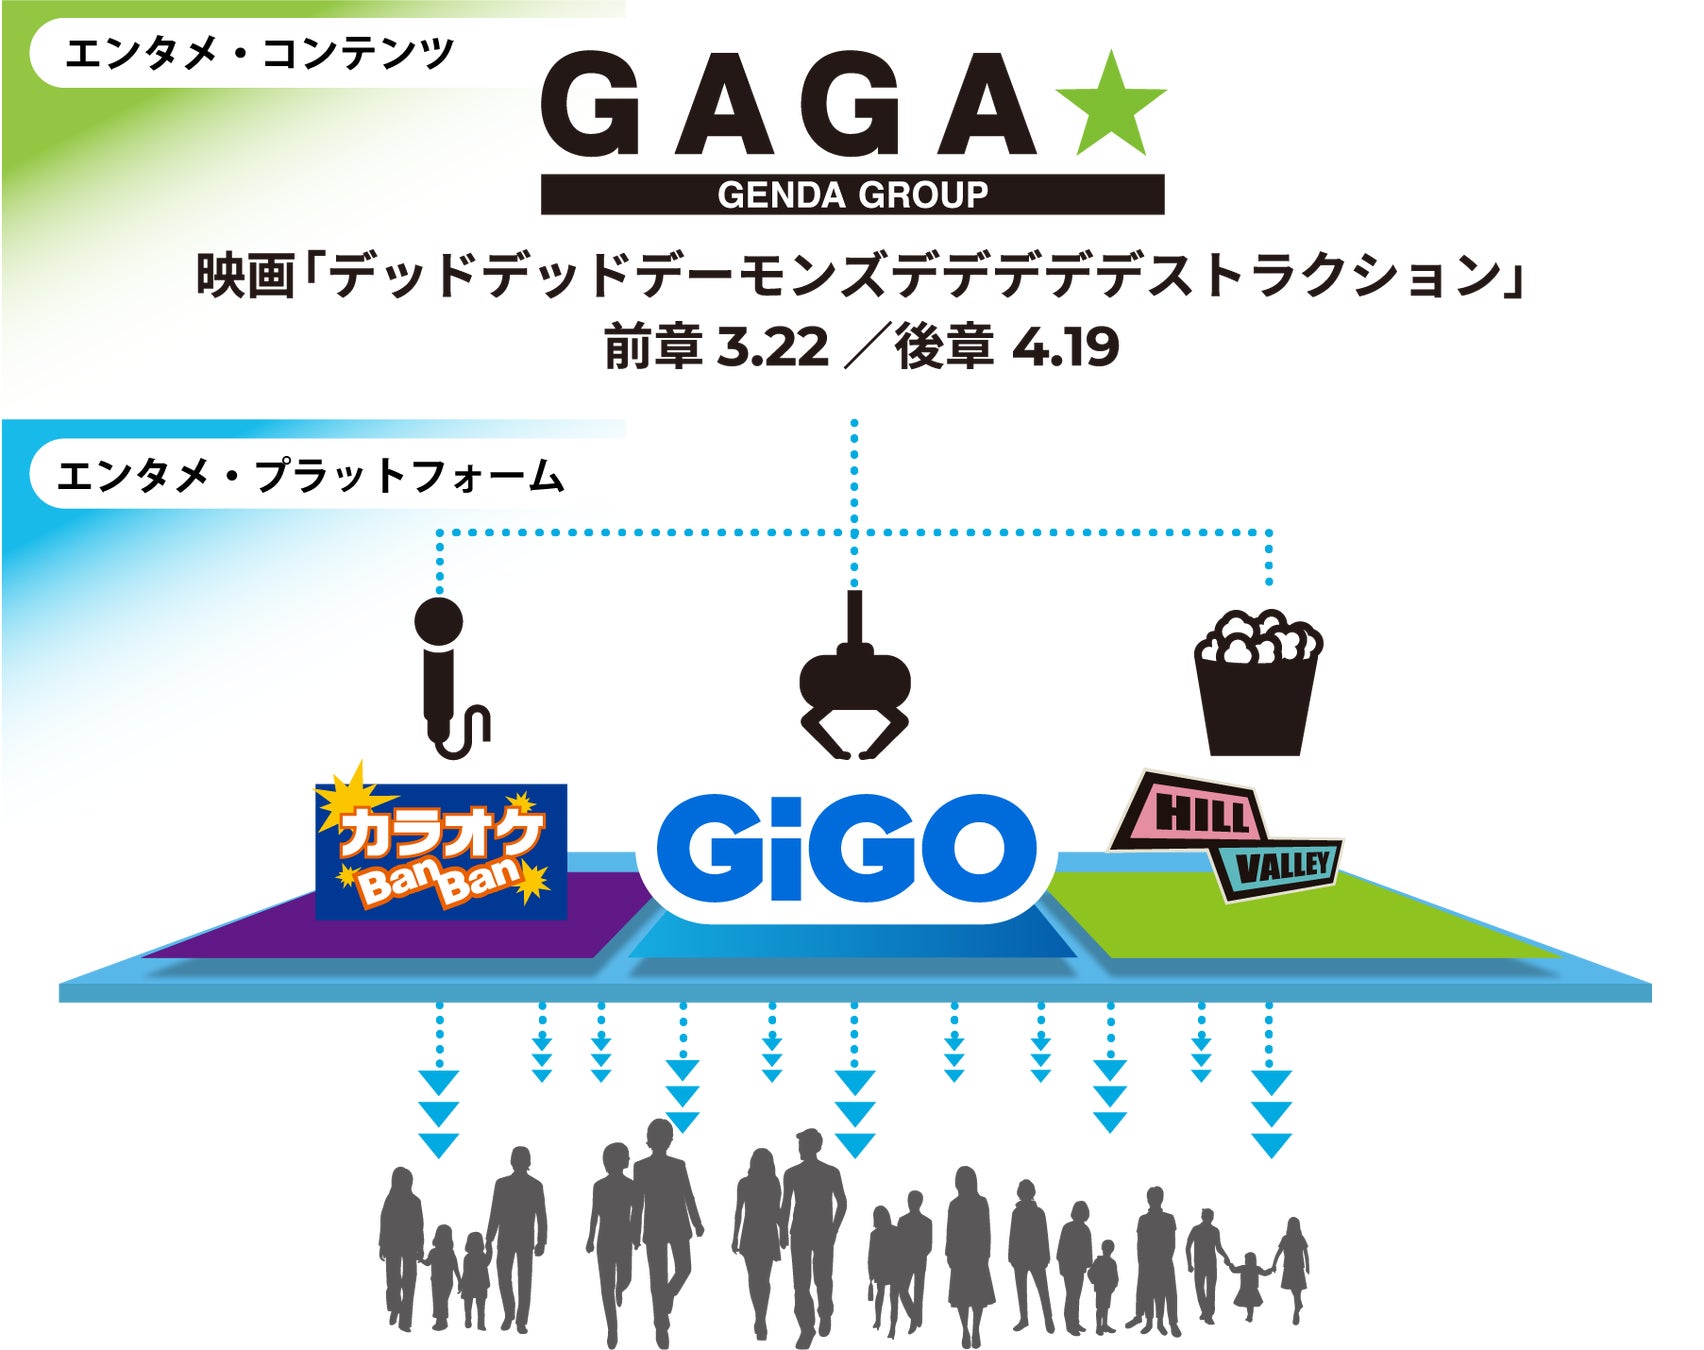 GENDAグループを横断した初のキャンペーンを実施！GAGA★の配給作品「デッドデッドデーモンズデデデデデストラクション」を「GiGO」「ヒルバレー」「カラオケBanBan」が盛り上げる。